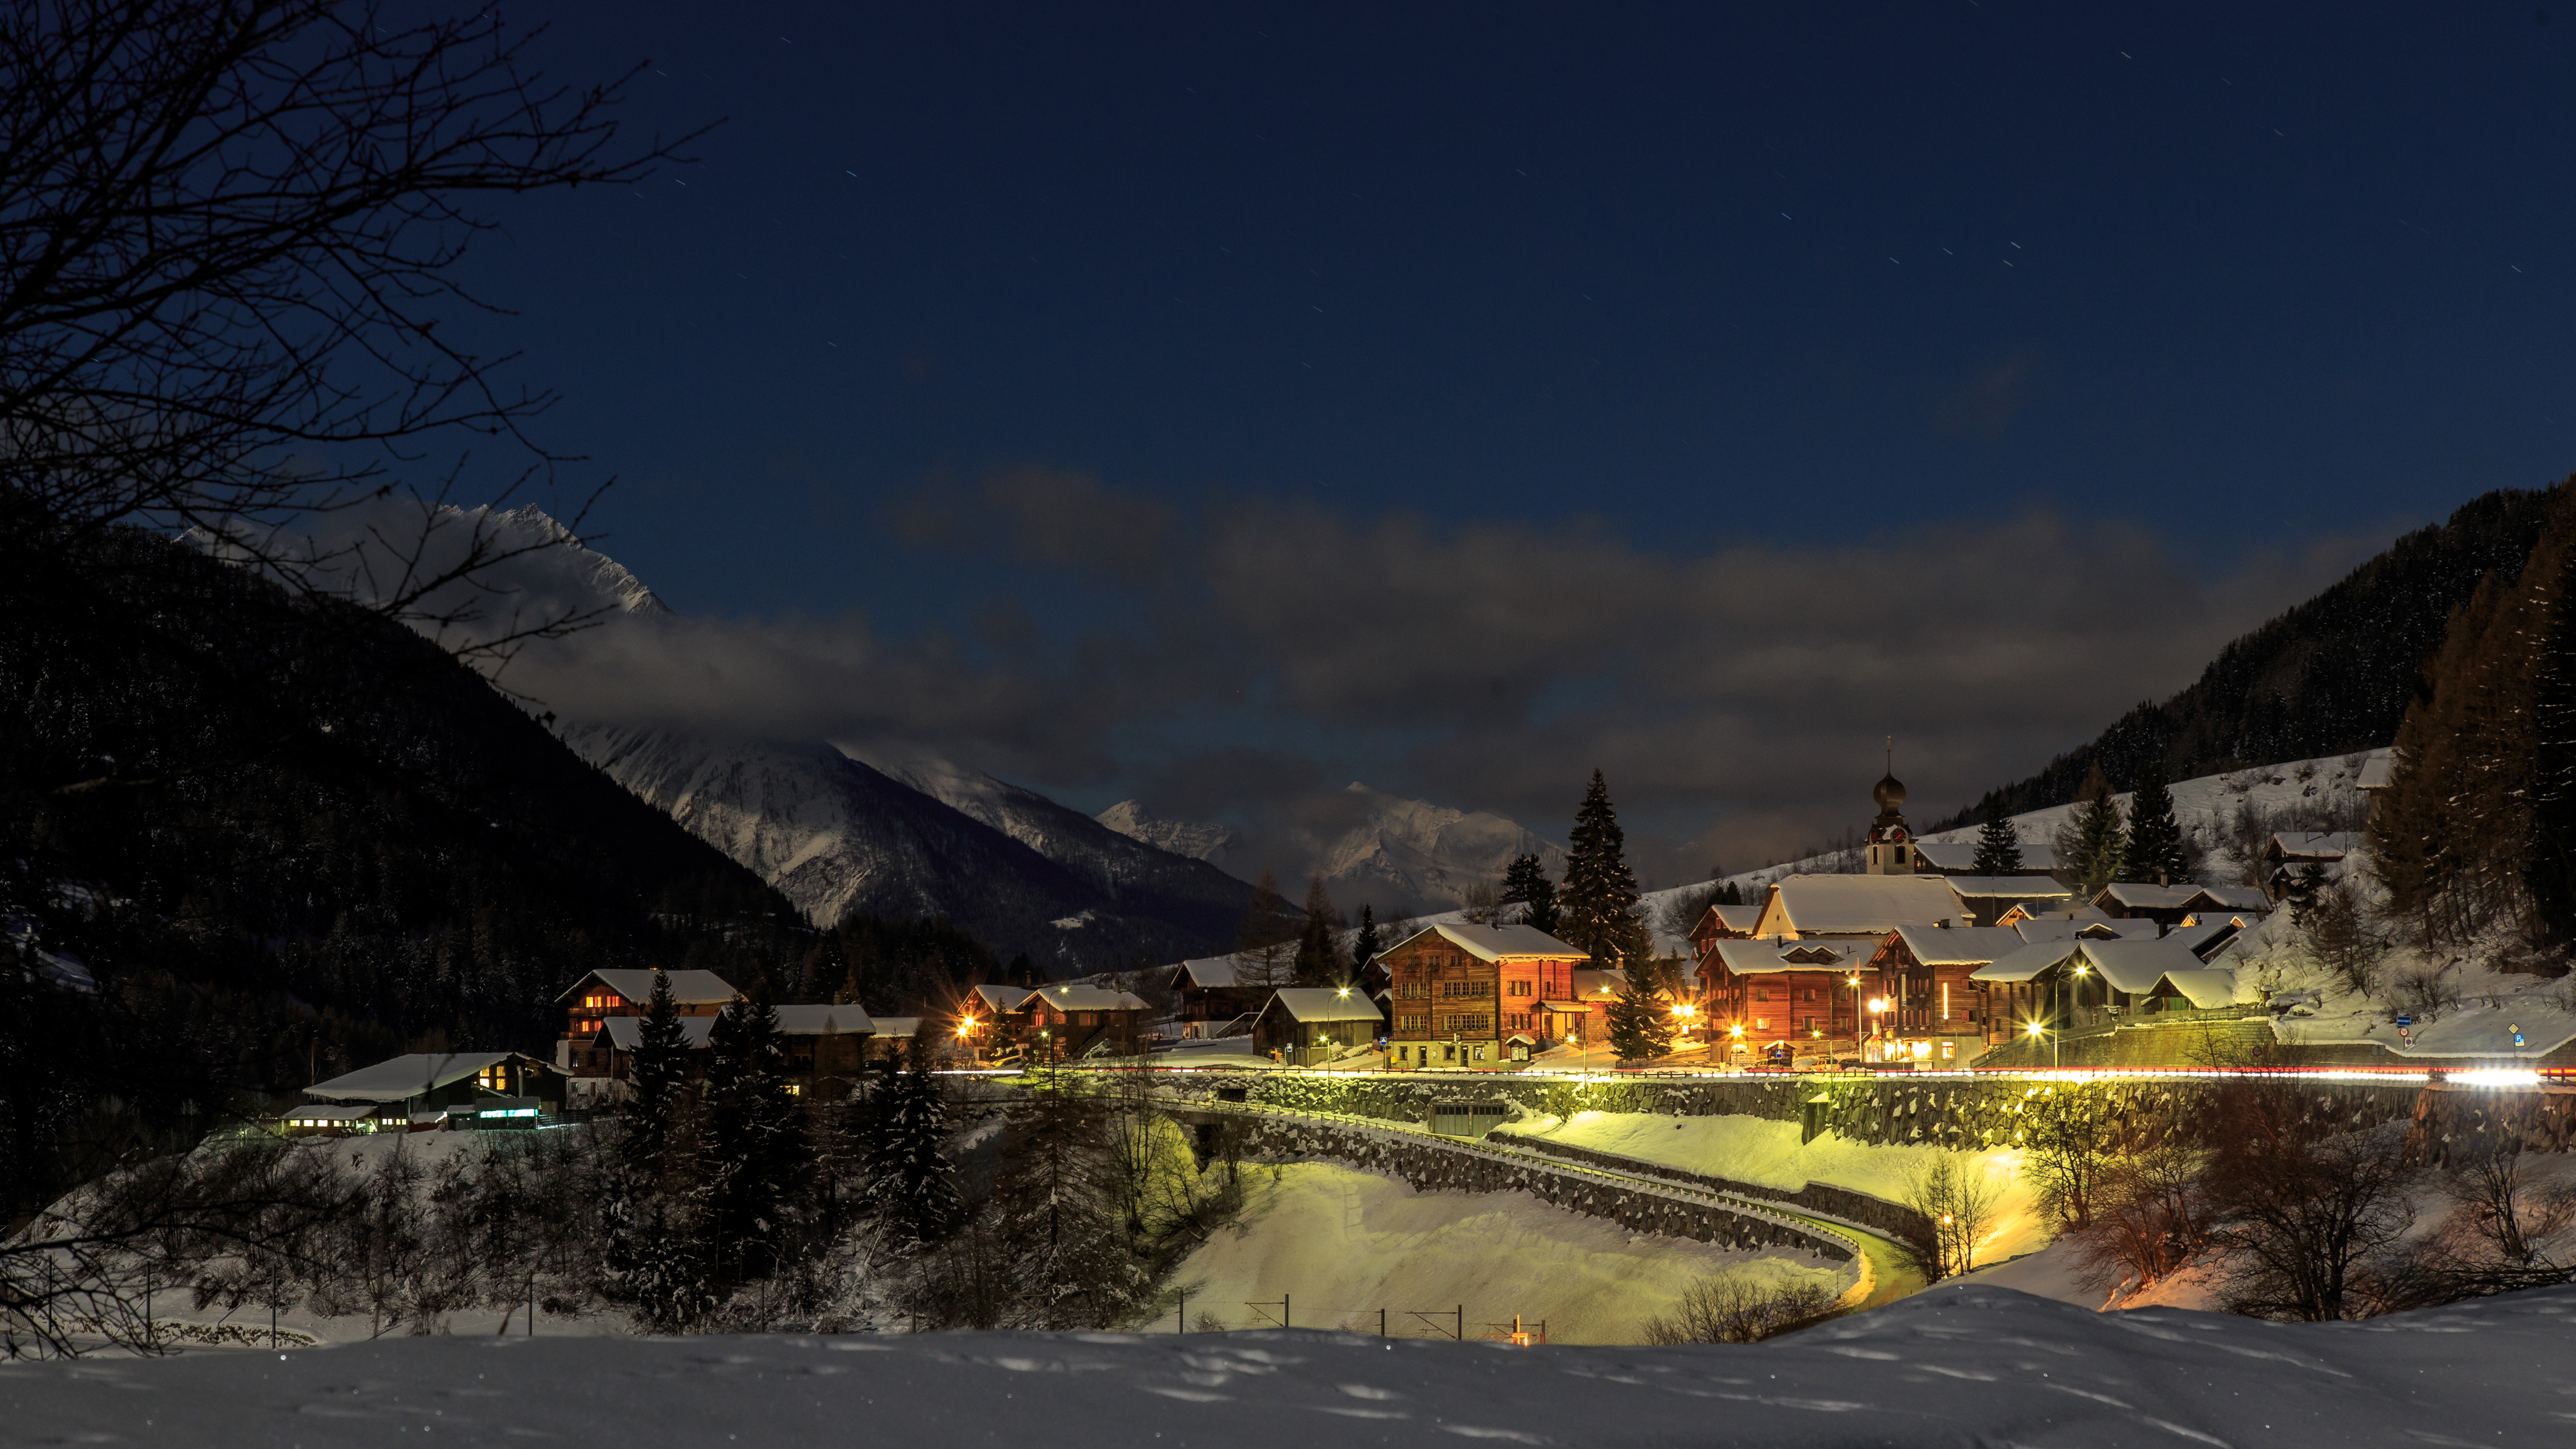 Winter Village in Switzerland 4k Ultra HD Wallpaper